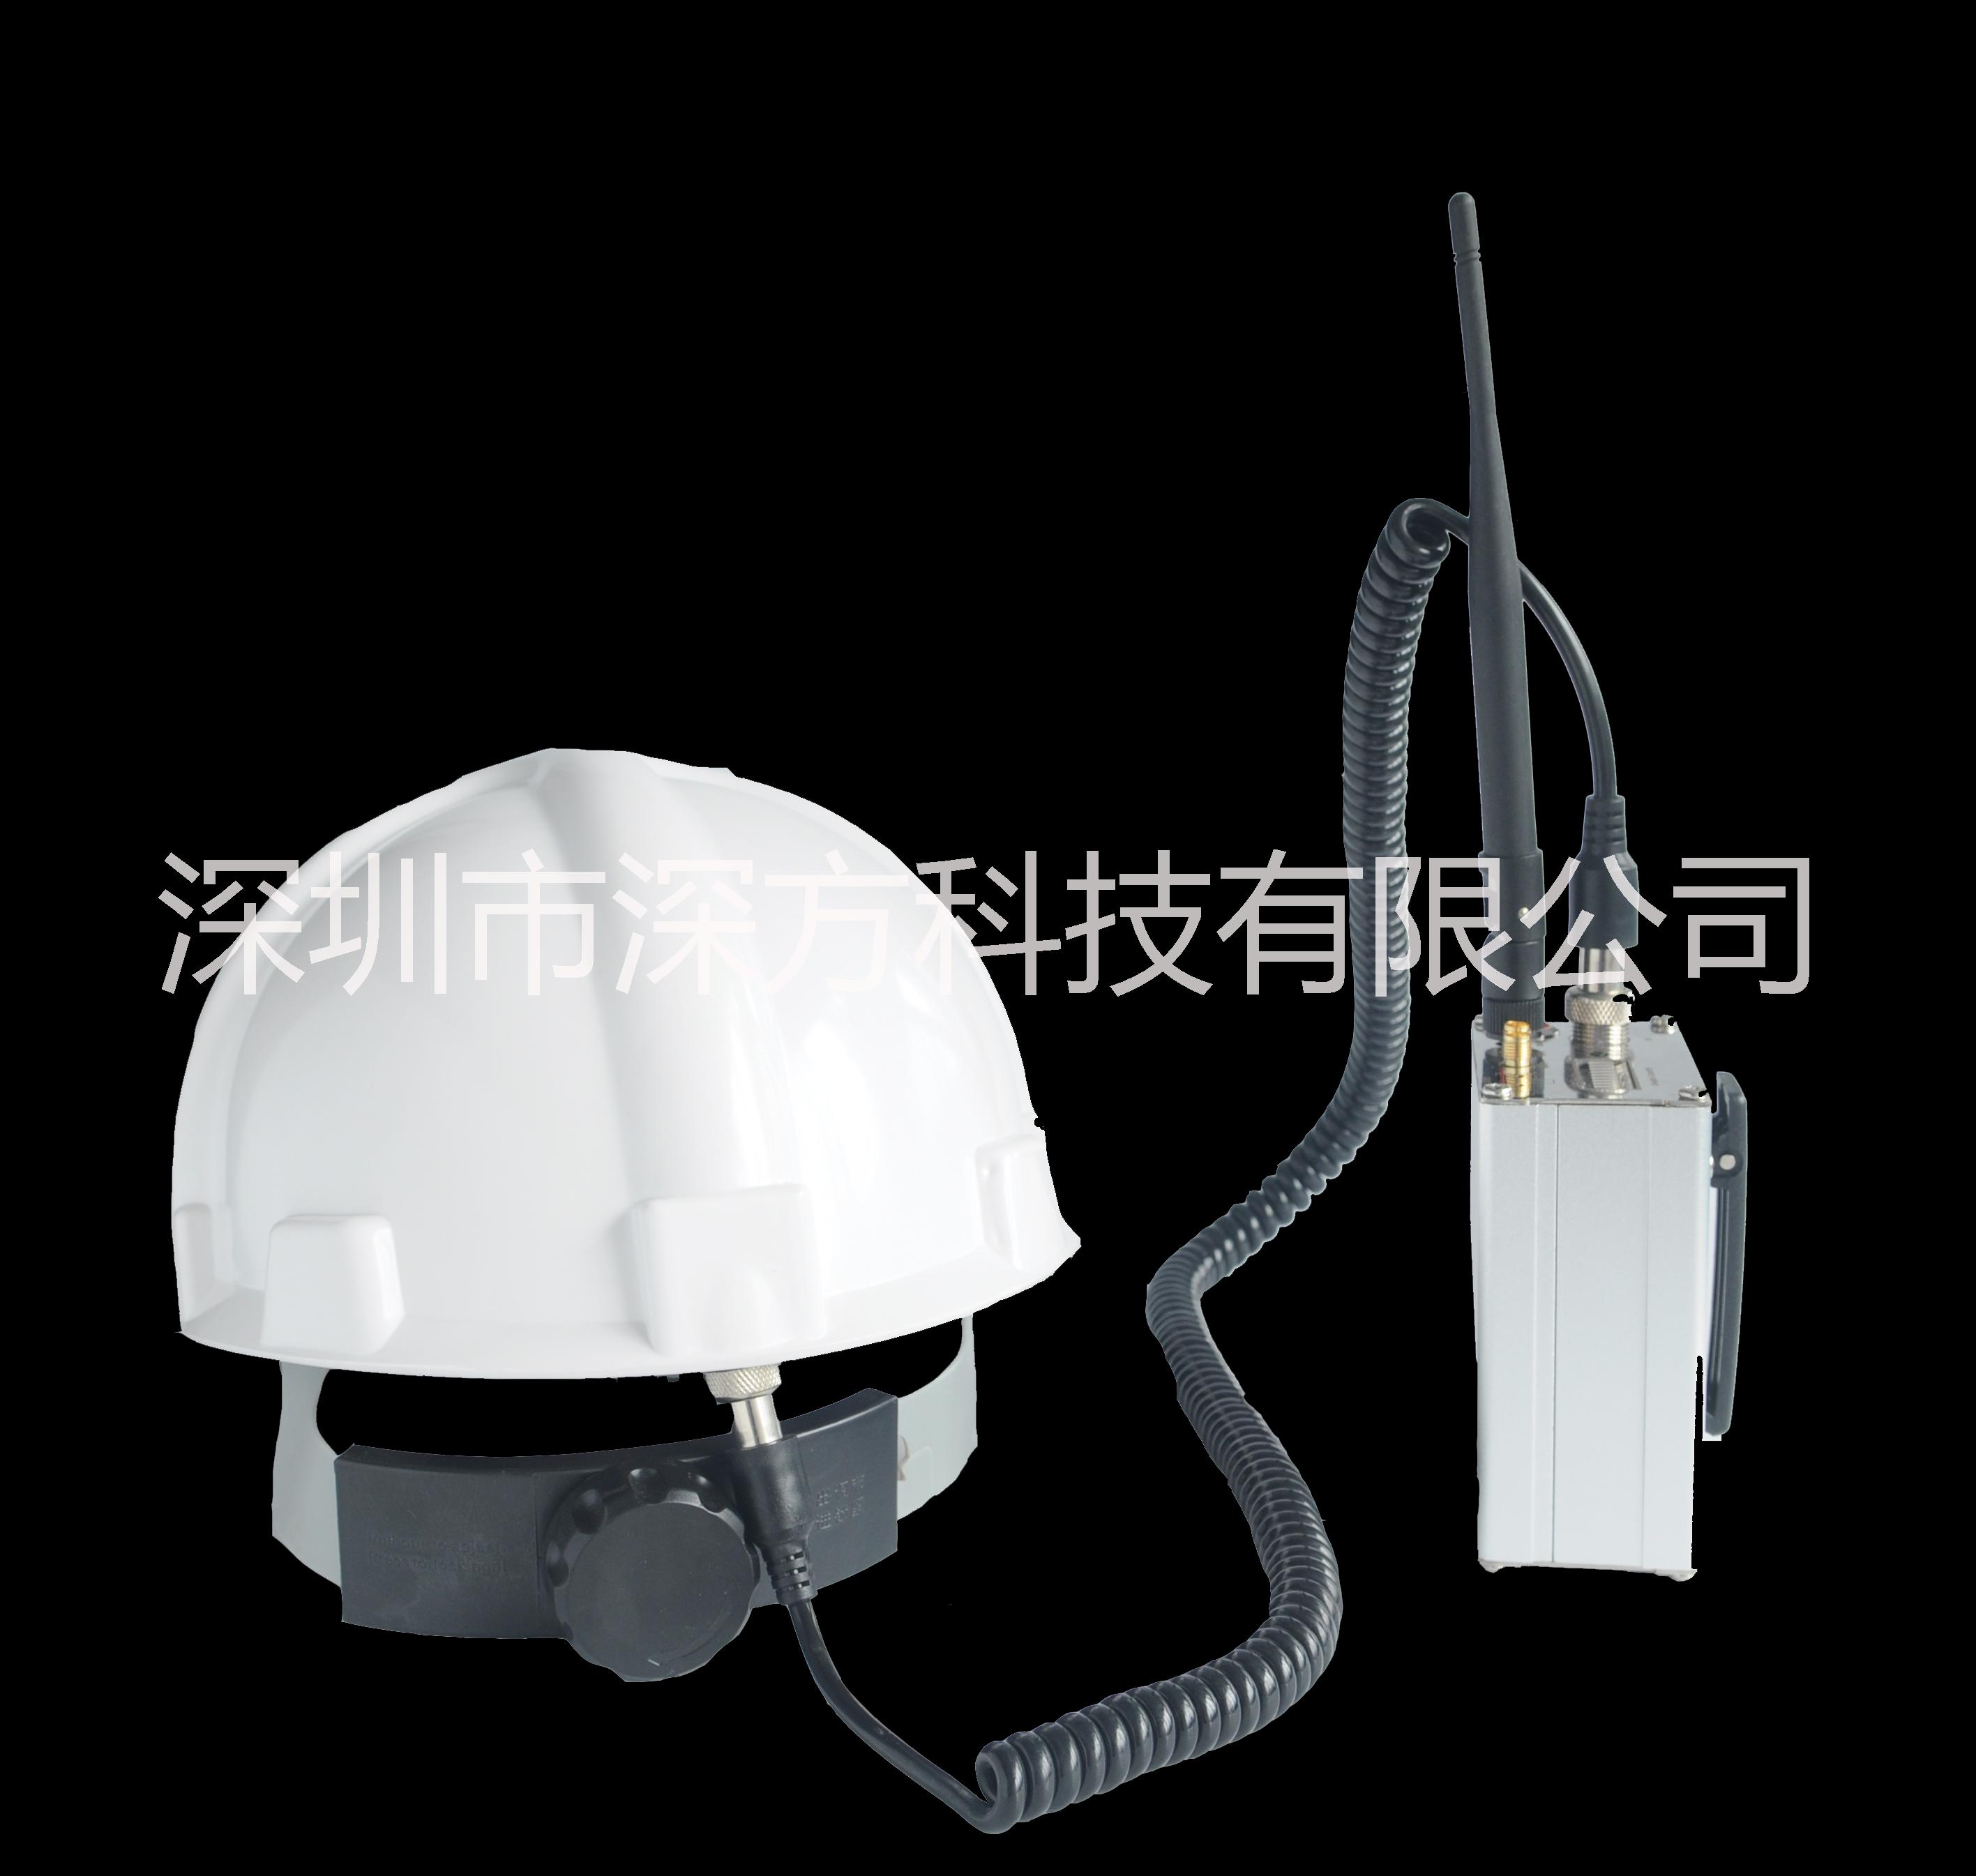 供应4G单兵头盔无线传输设备4G无线监控系统4G无线传输系统4G无线音视频传输设备